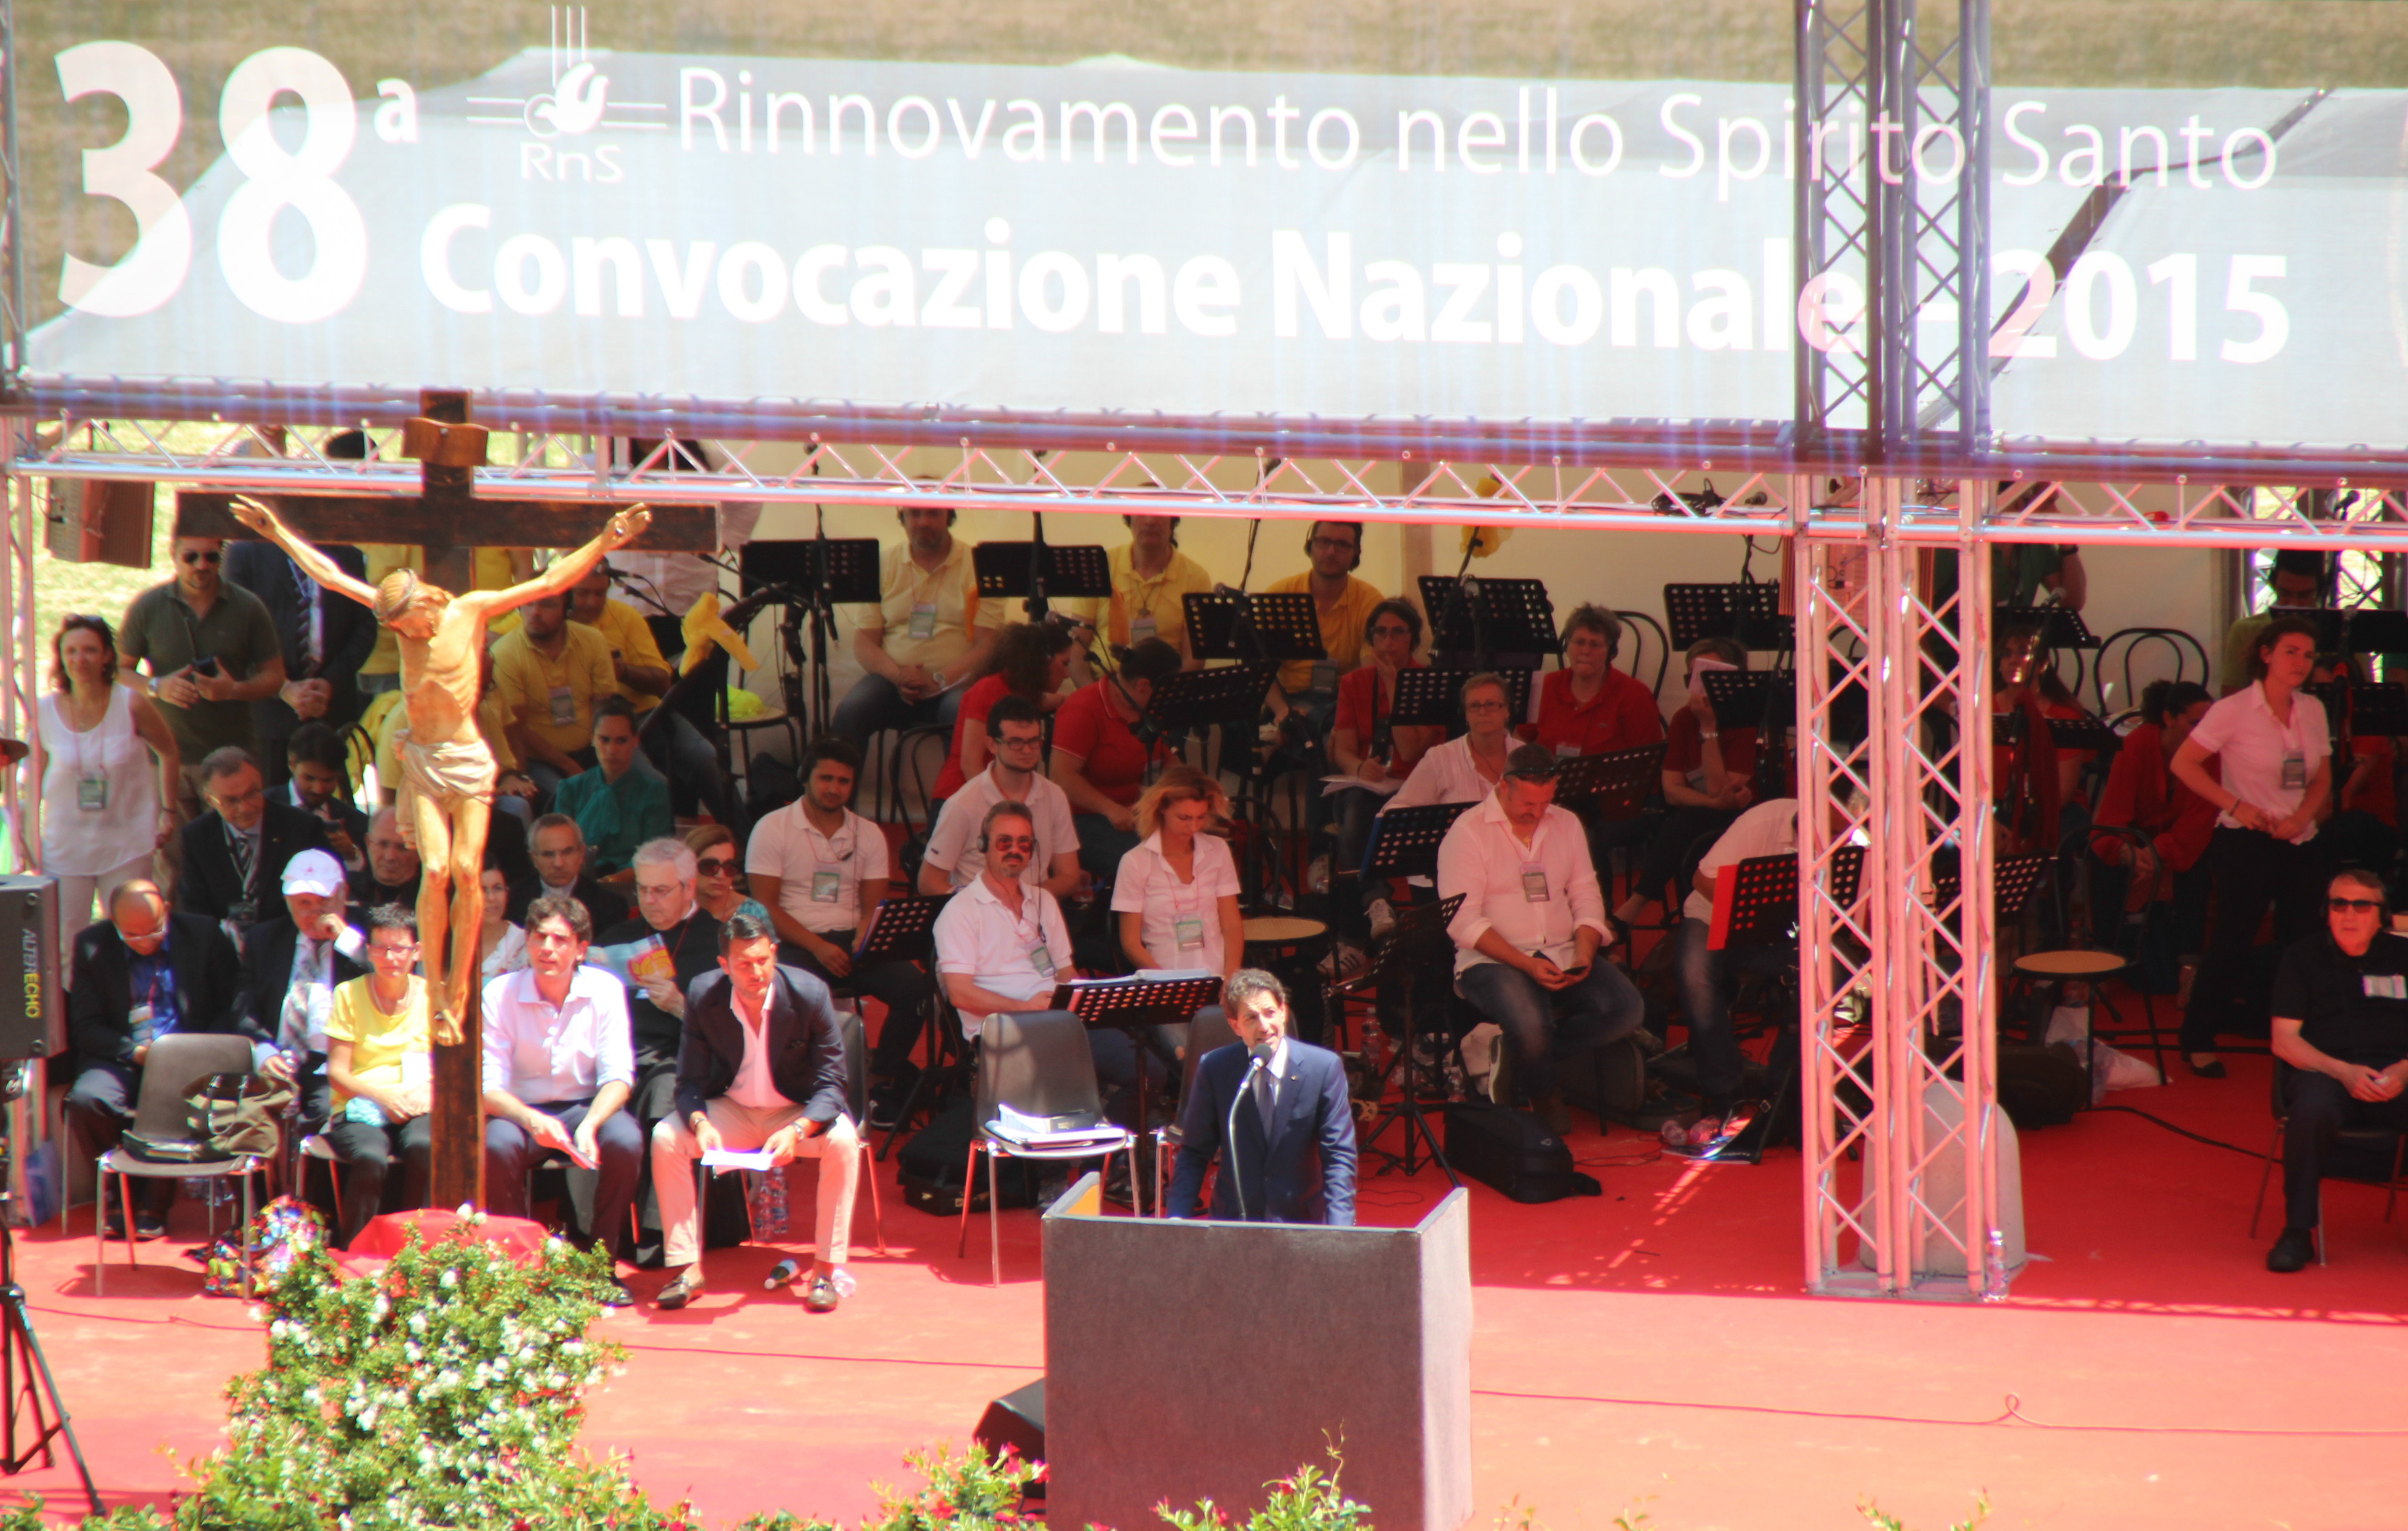 Salvatore Martinez at 38° national convocation of Rinnovamento nello Spirito Santo (Rome